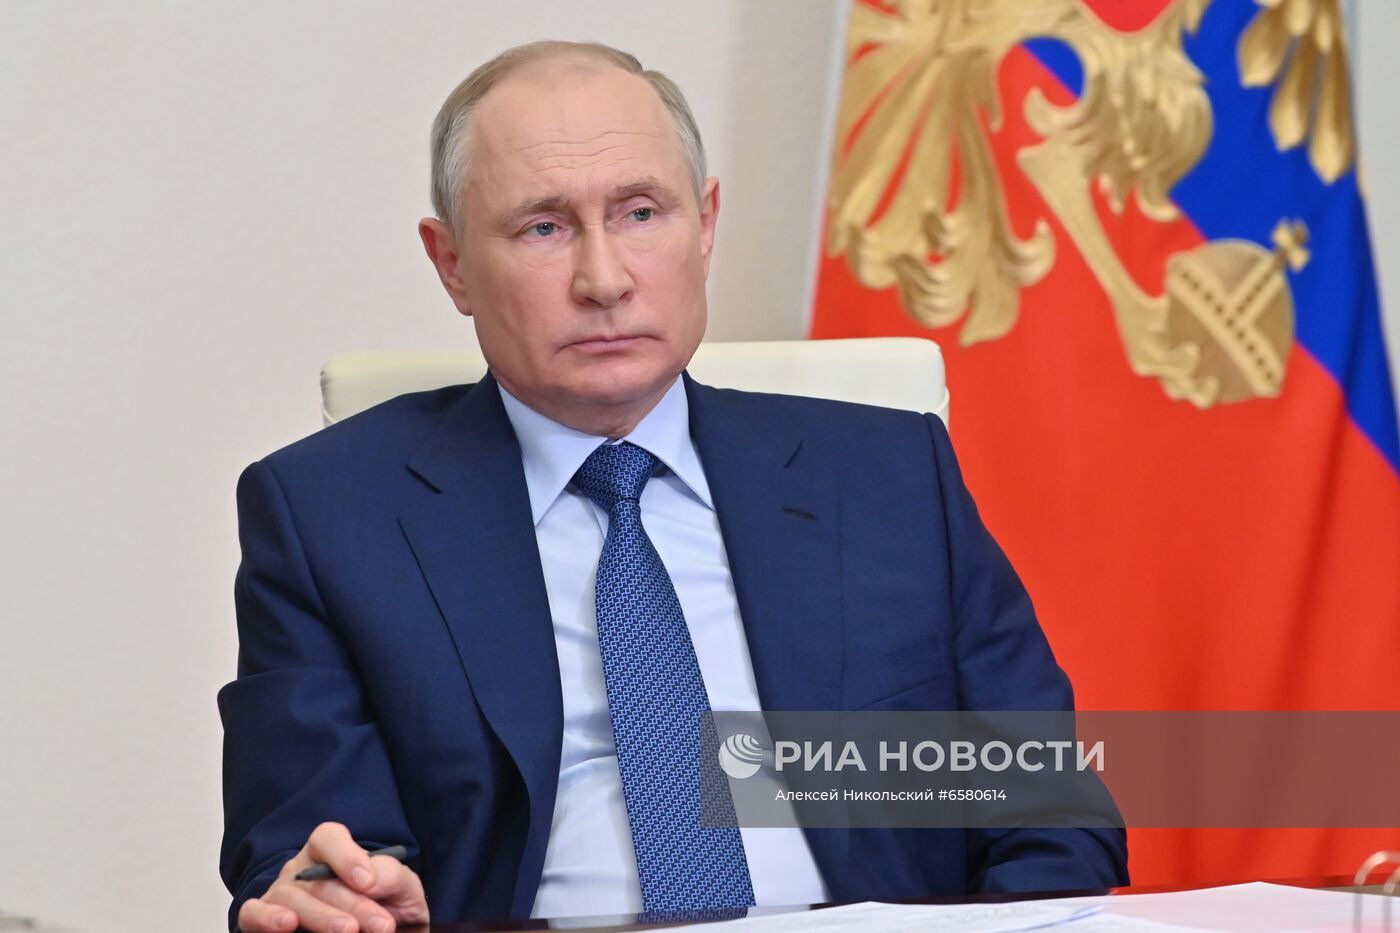 Президент РФ В. Путин провел рабочую встречу с главой Чечни Р. Кадыровым